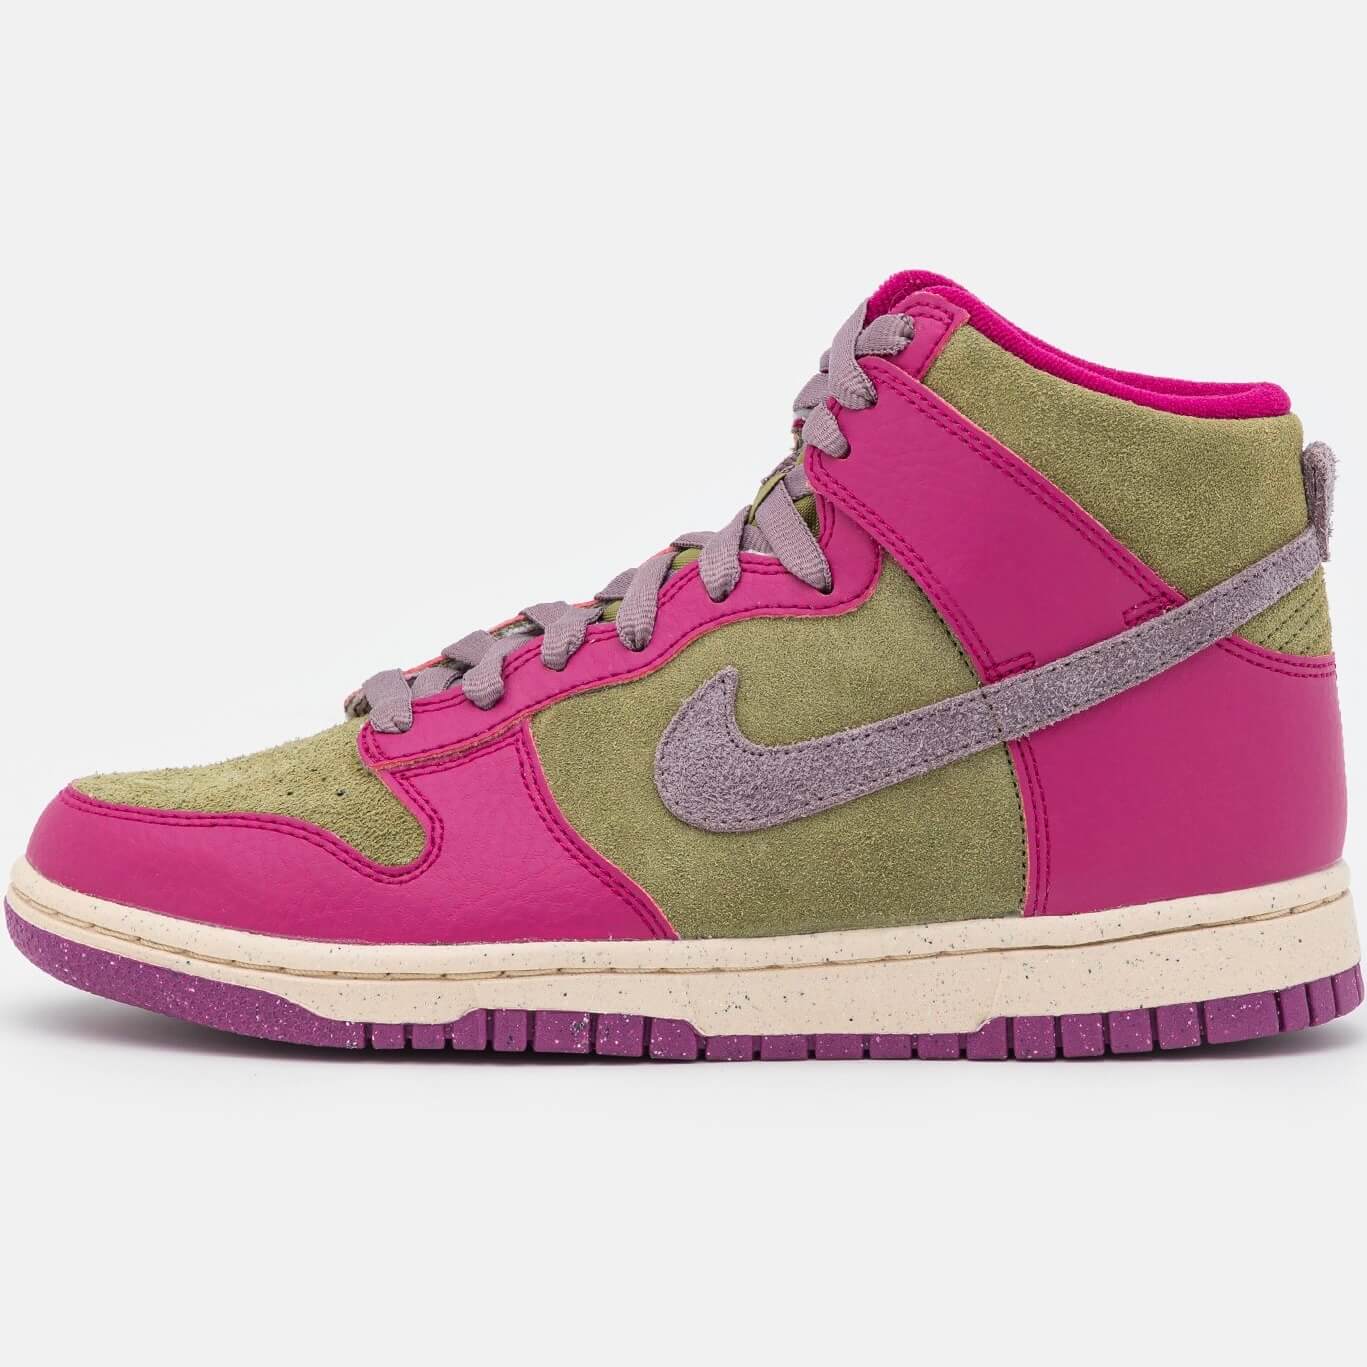 Кроссовки Nike Dunk High Eso, ягодный/фиолетовый/жемчужно-белый